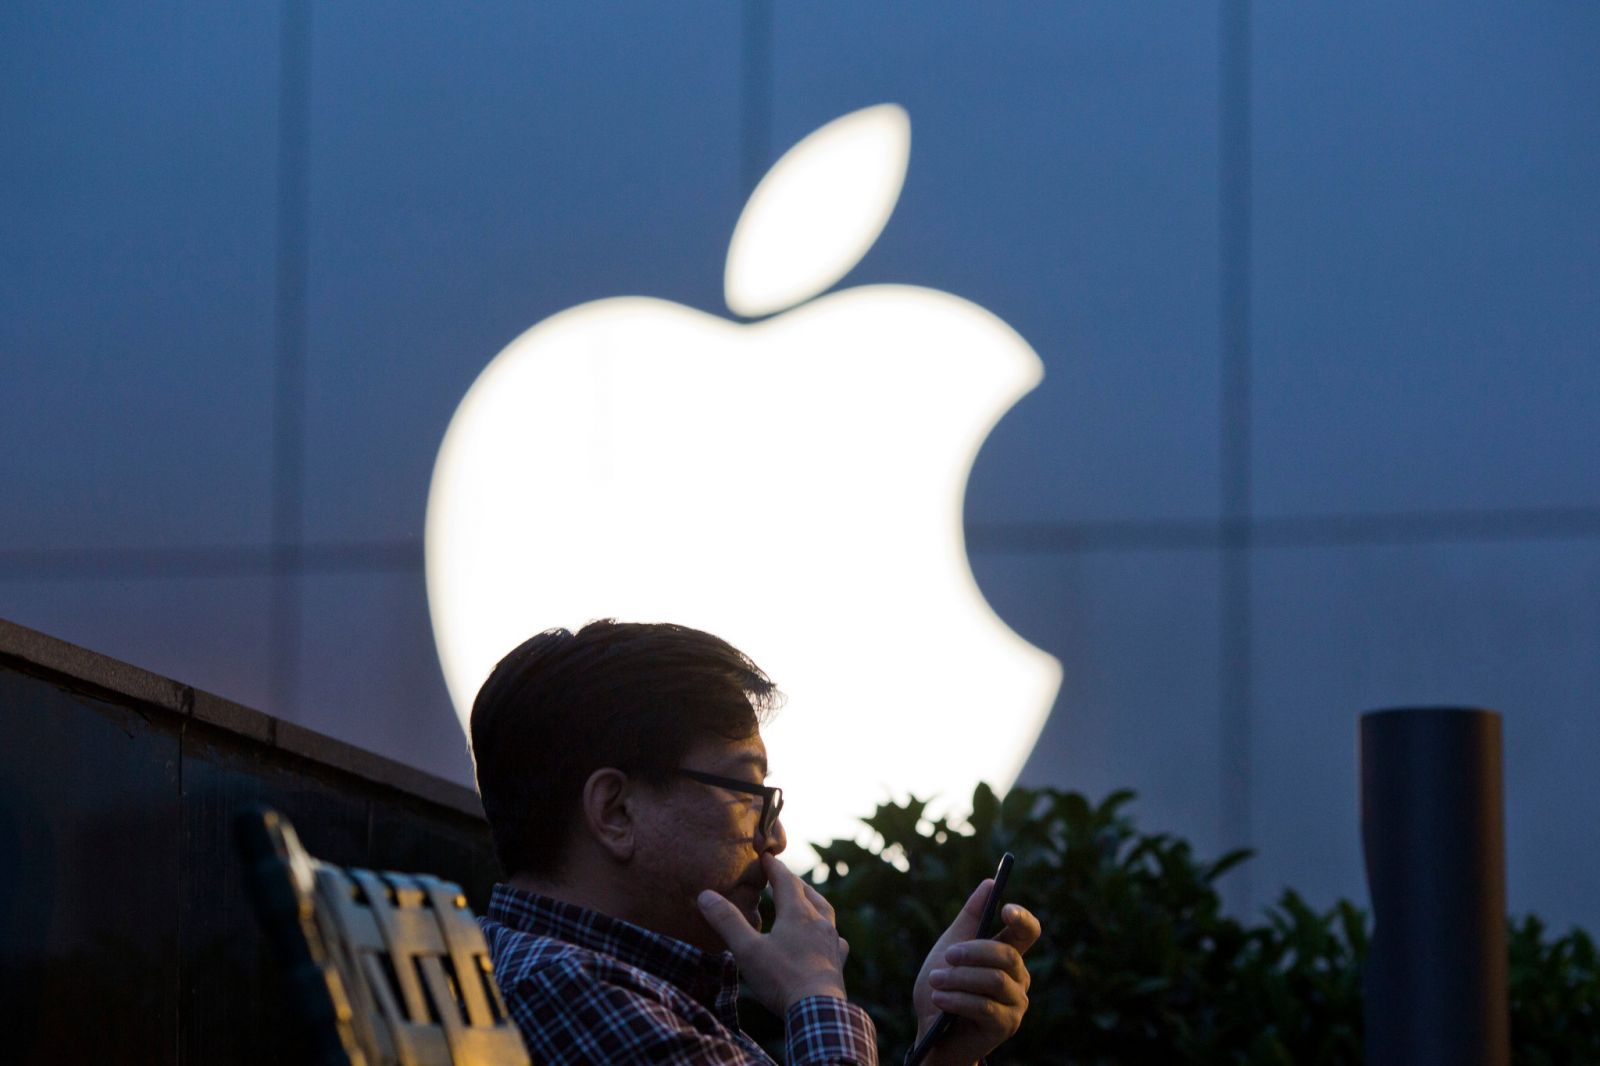 Trung Quốc cấm nhân viên tại các cơ quan và công ty nhà nước sử dụng iPhone.